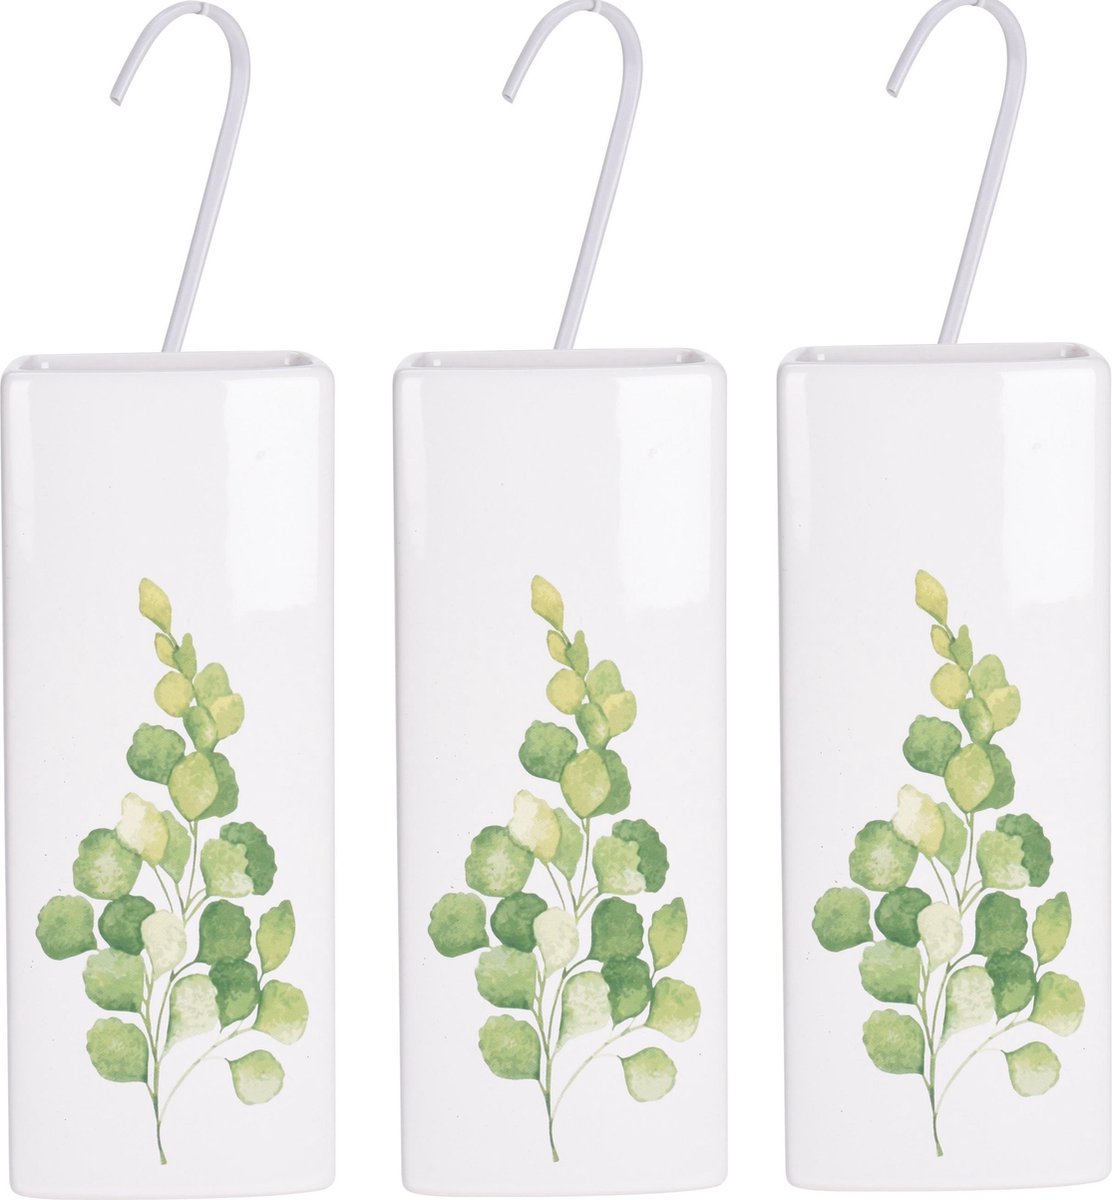 3x Witte radiator waterverdampers/luchtbevochtigers botanische planten print eucalyptus blad 21 cm - Waterverdampers voor de verwarming